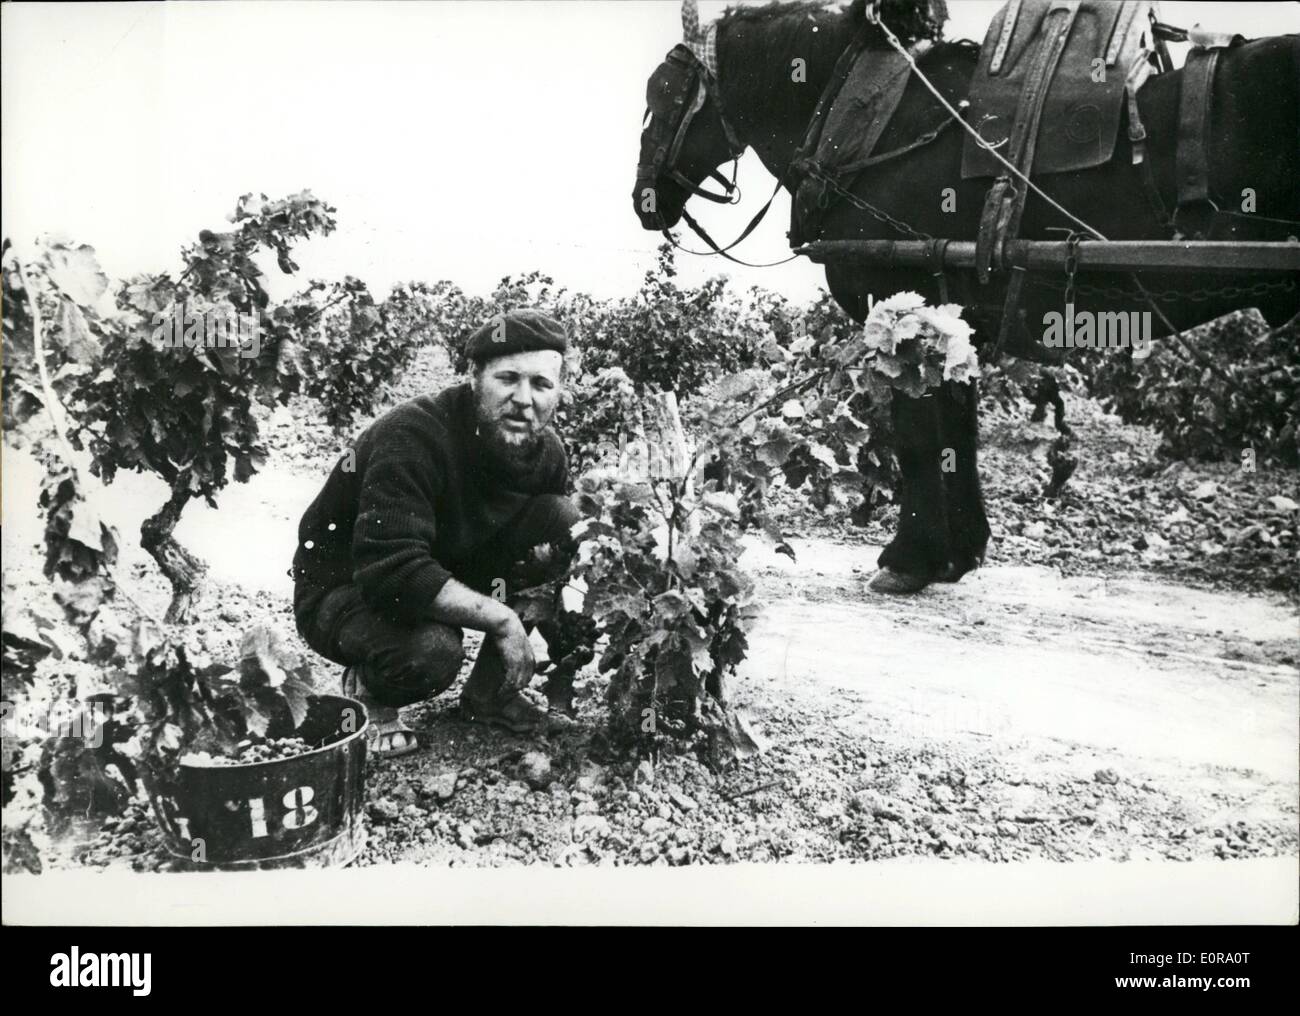 Sett. 09, 1958 - romanziere inglese la raccolta delle uve nel sud della Francia: Jack Wilder, un giovane romanziere inglese, è ora la raccolta delle uve a Les Corbieres, nel sud ovest della Francia, detto martinetto: Questa è la più gloriosa passatempo che ho avuto per anni. La foto mostra il Jack Wilder nel vigneto. Foto Stock